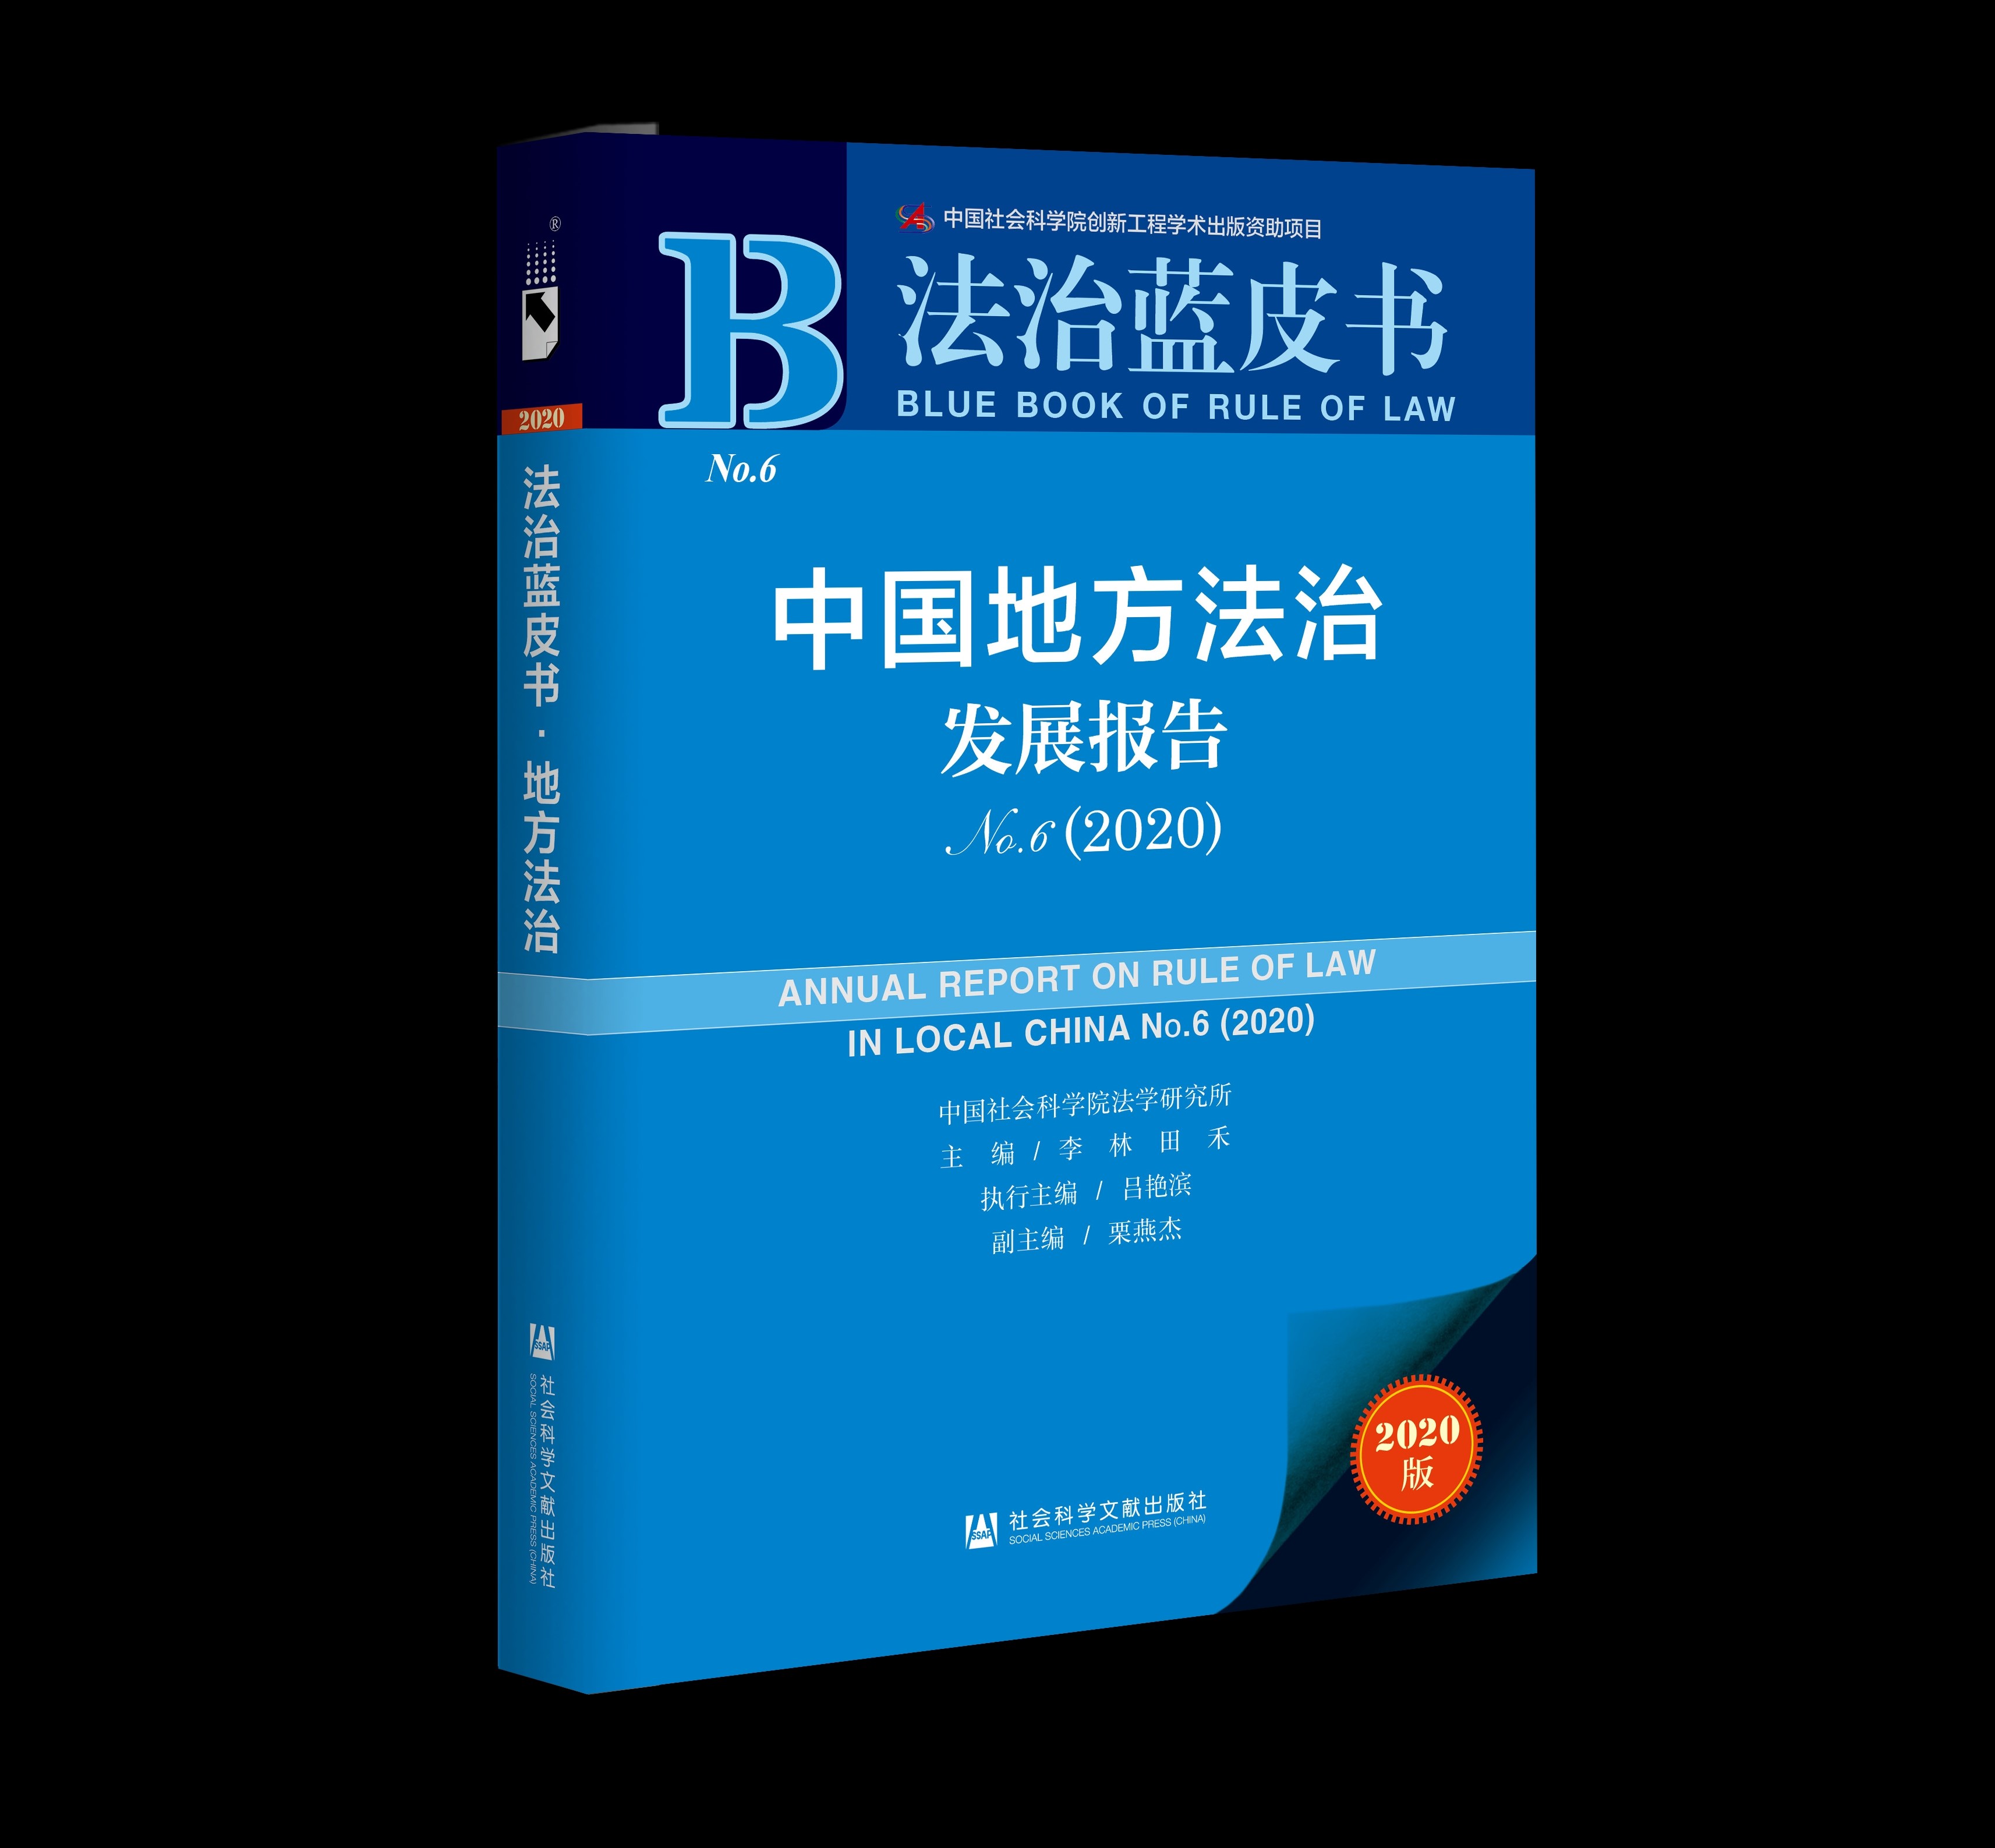 中国社会科学院法学研究所发布2020年《地方法治蓝皮书》